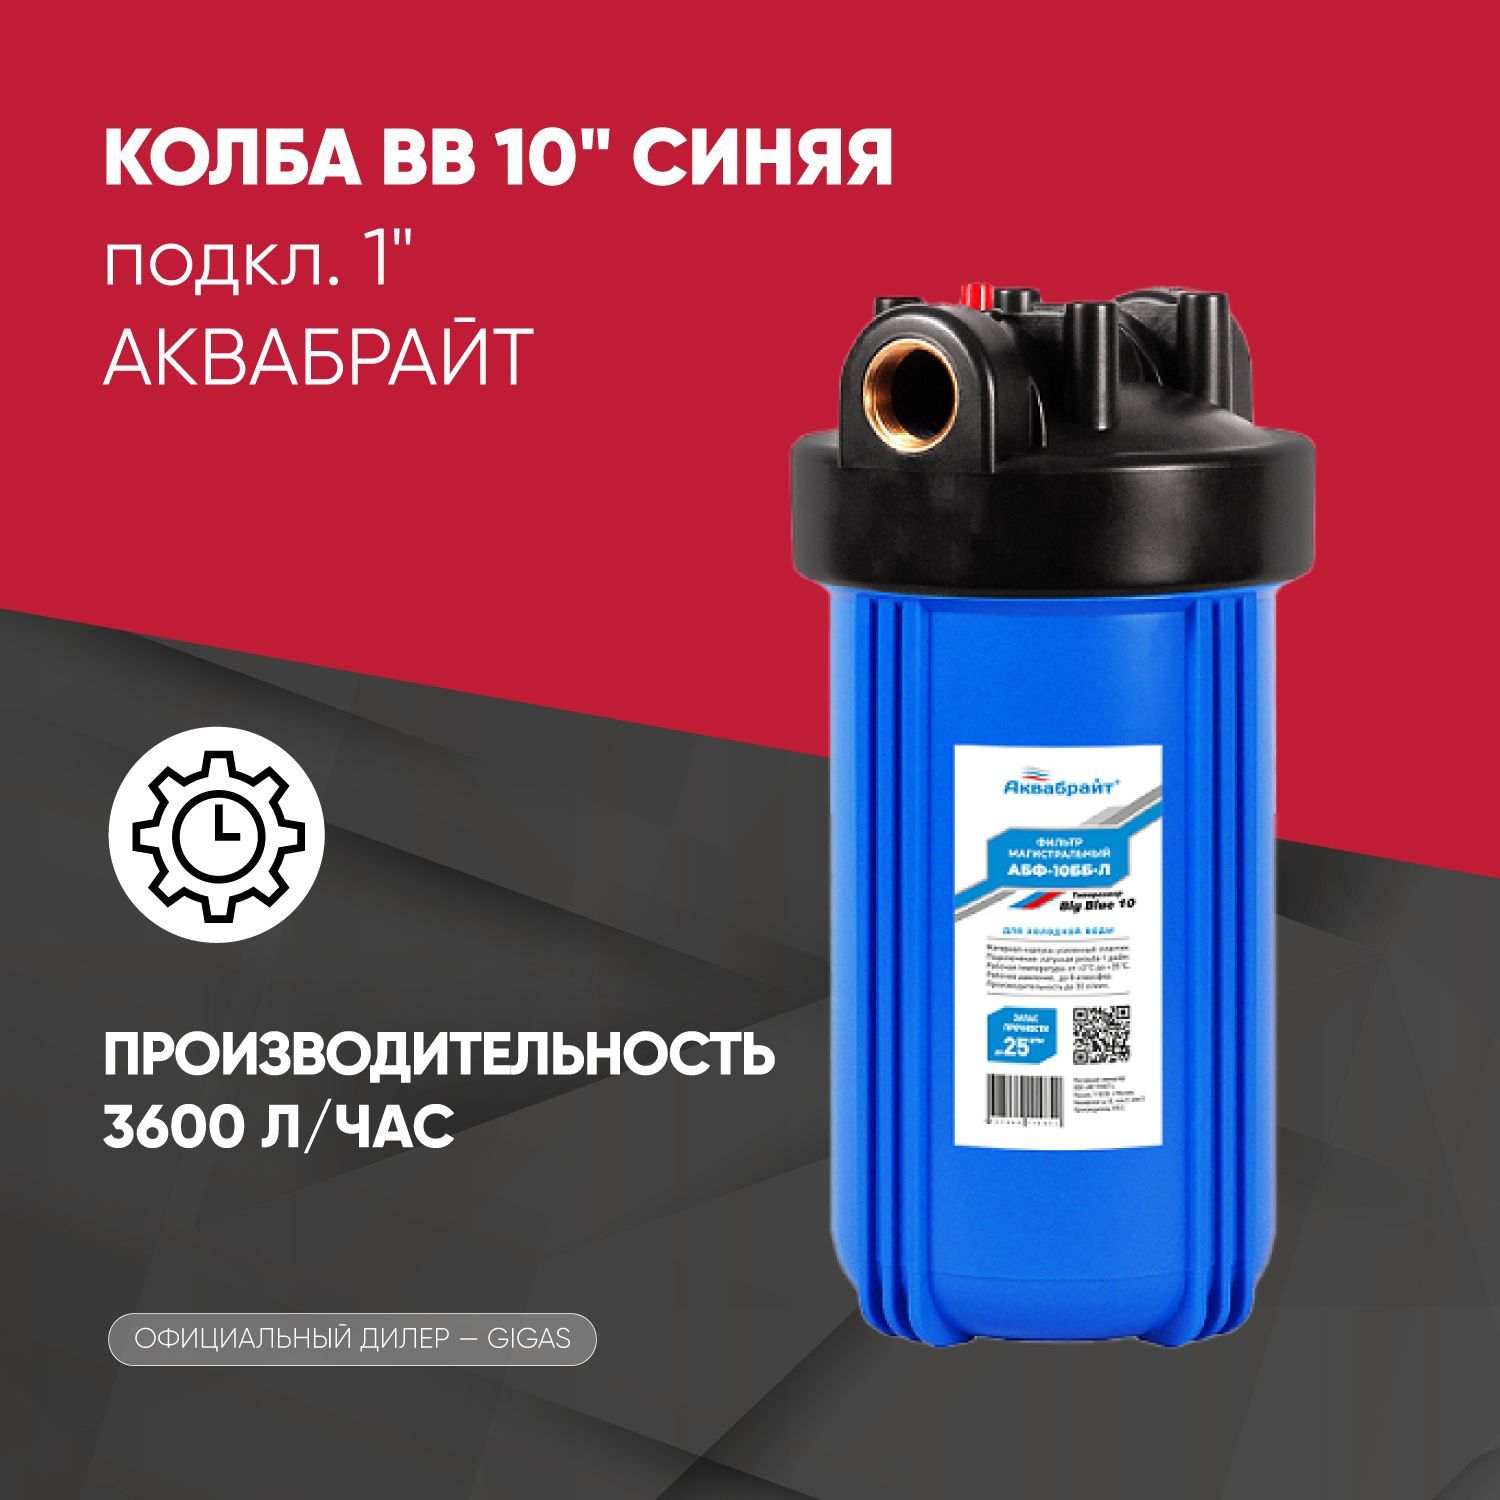 Фильтрдляводымагистральный(колба)BB10"Синяя,подкл.1"